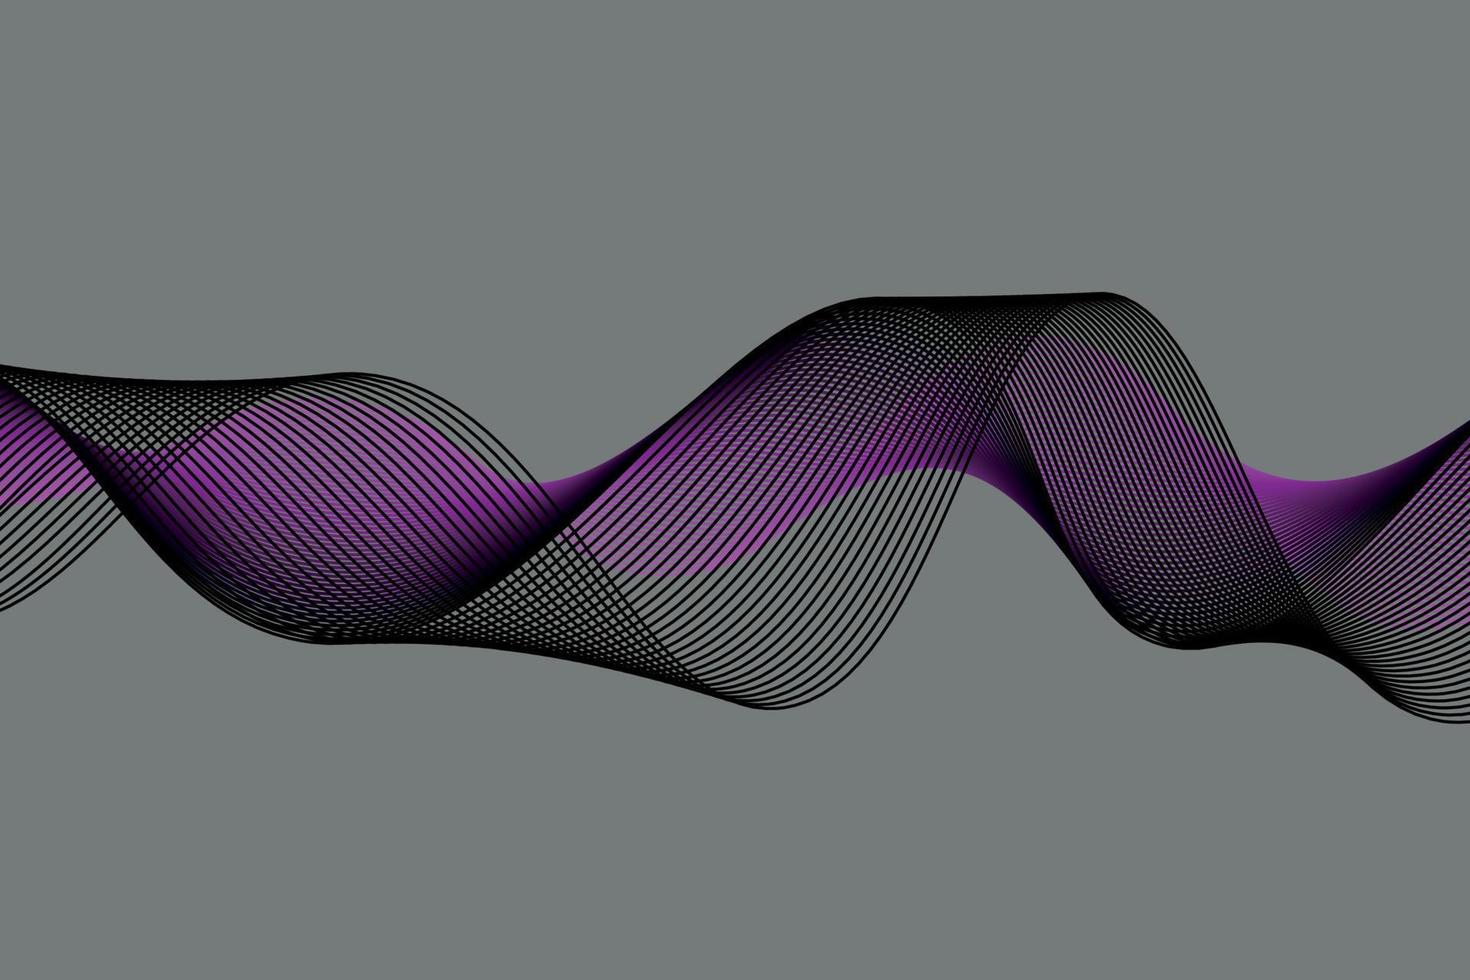 lila Welle Linien auf schwarz Hintergrund. Flüssigkeit abstrakt hintergrund.geeignet zum landng Seite und Computer Desktop Hintergrund. vektor